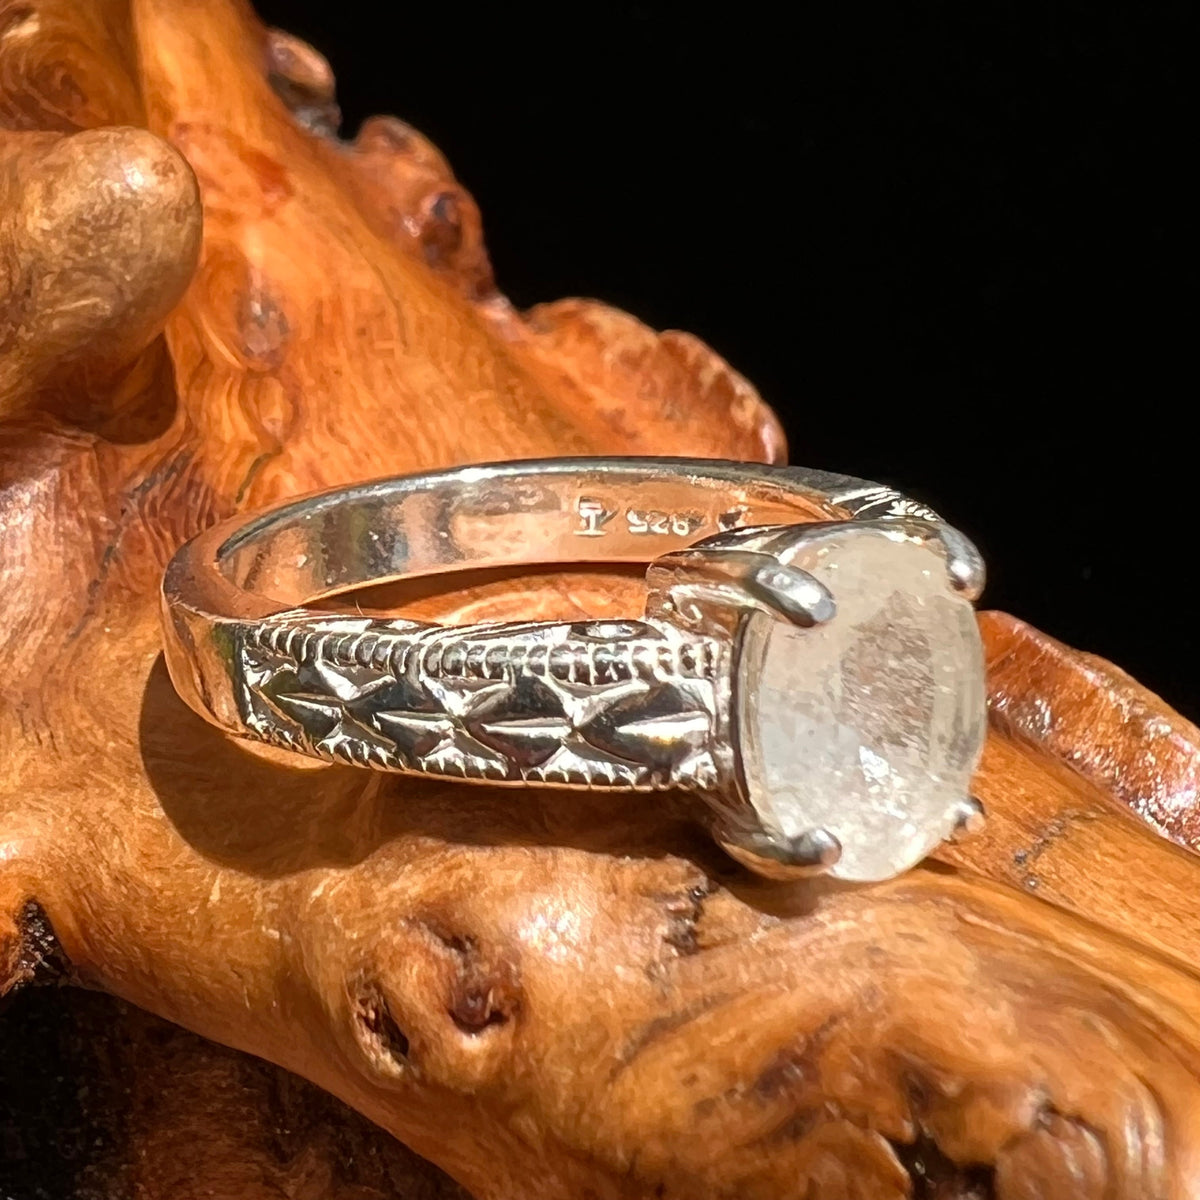 Libyan Desert Glass Ring Sterling Silver Size 6.5 #5191-Moldavite Life